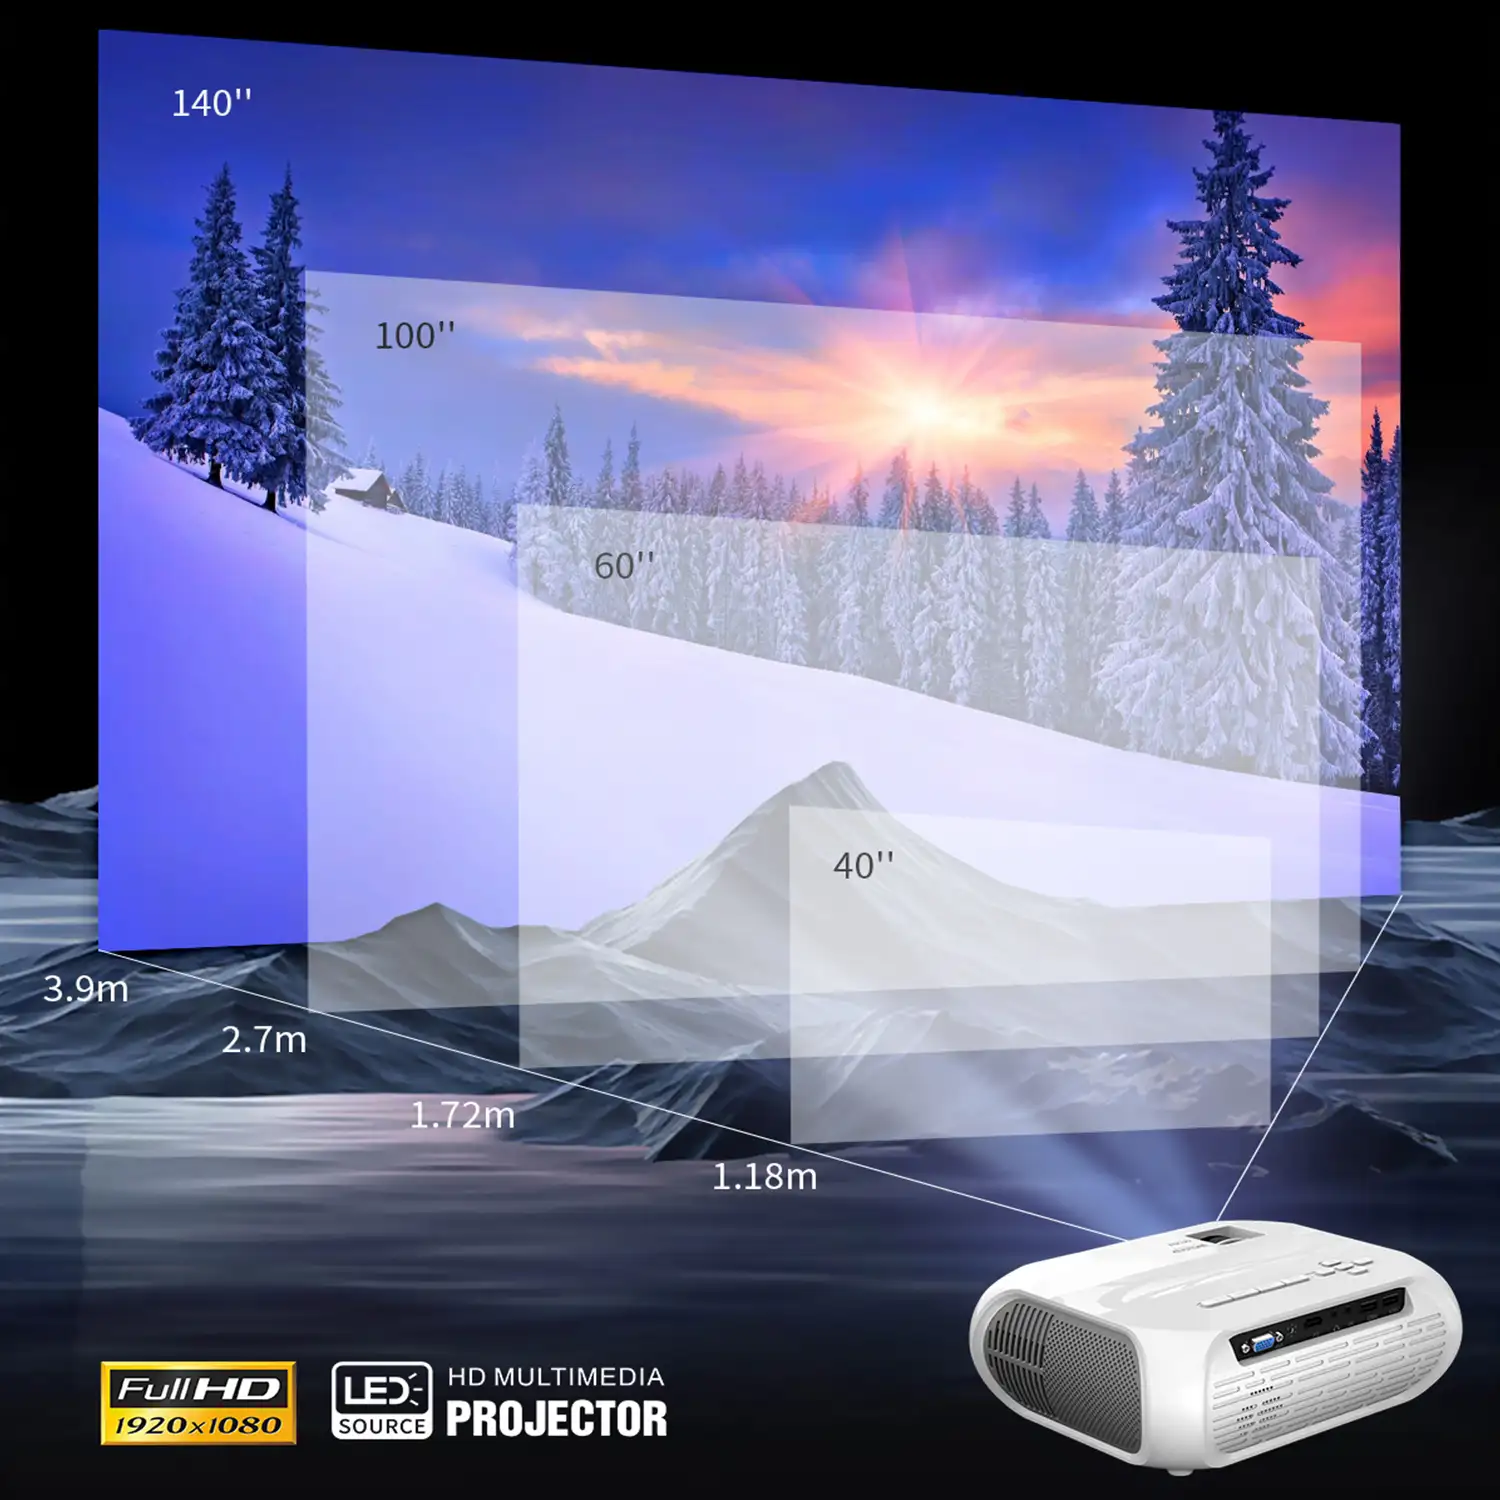 Proyector LCD T9 Wifi, FHD1080, duplicación de pantalla para iOS y Android. Conexión USB, HDMI y AV. De 40 a 140 pulgadas, 1800 lm. Con mando a distancia.